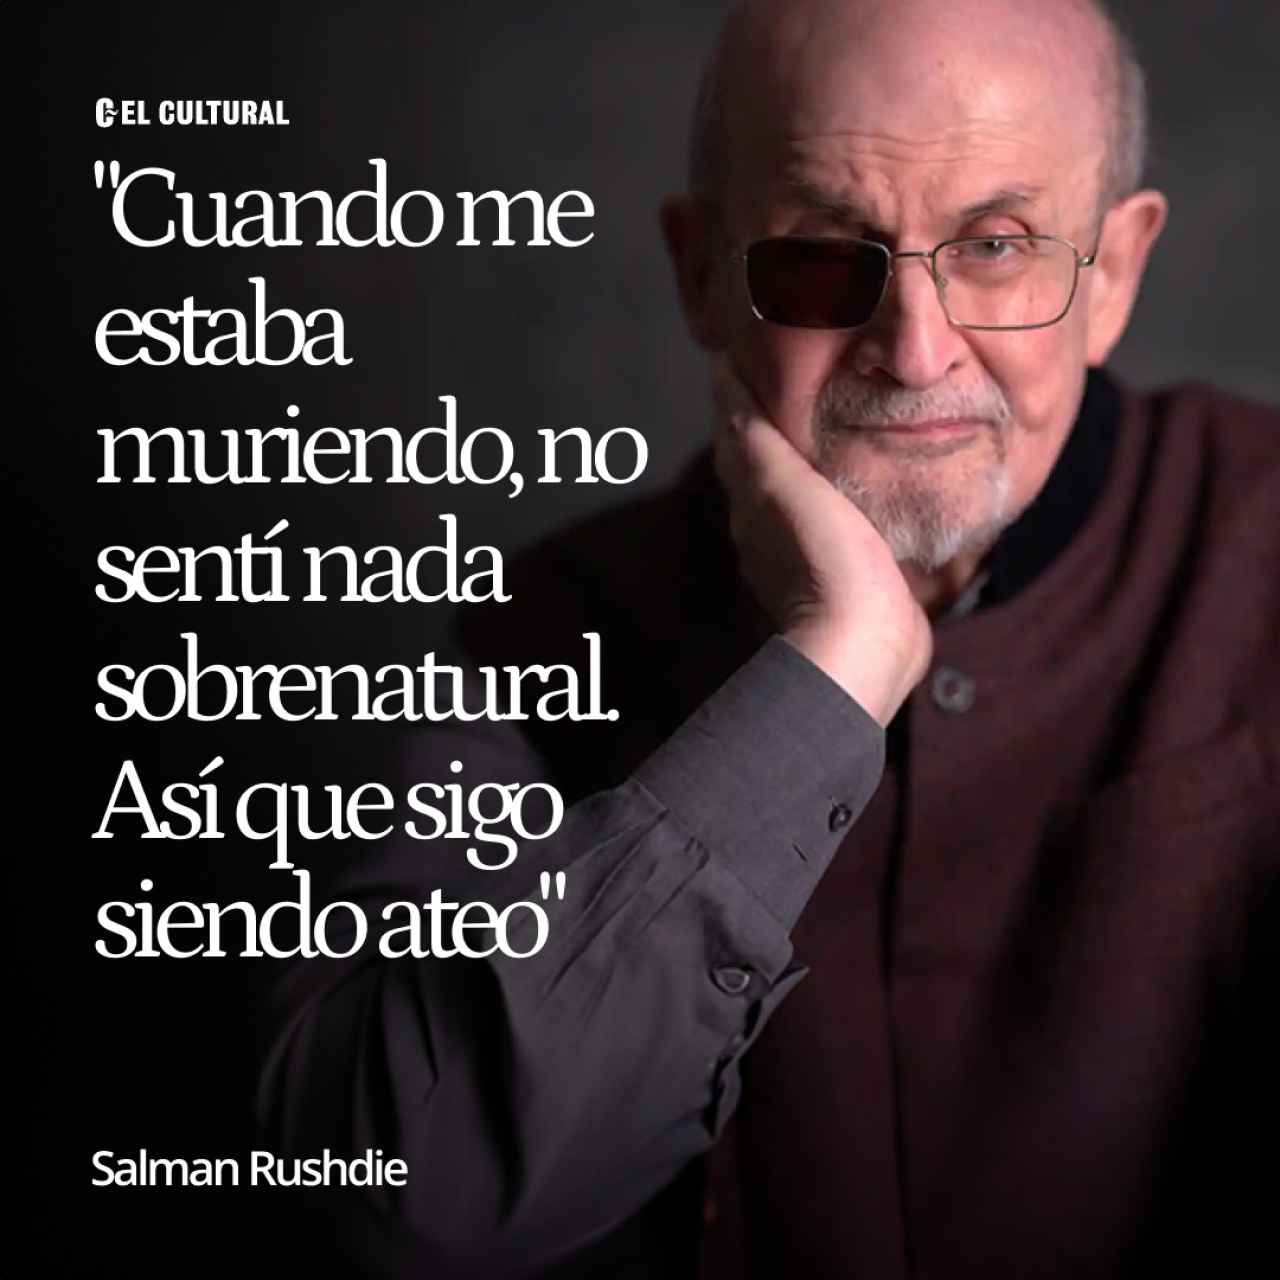 Salman Rushdie: "Cuando me estaba muriendo no sentí nada sobrenatural, así que sigo siendo ateo"